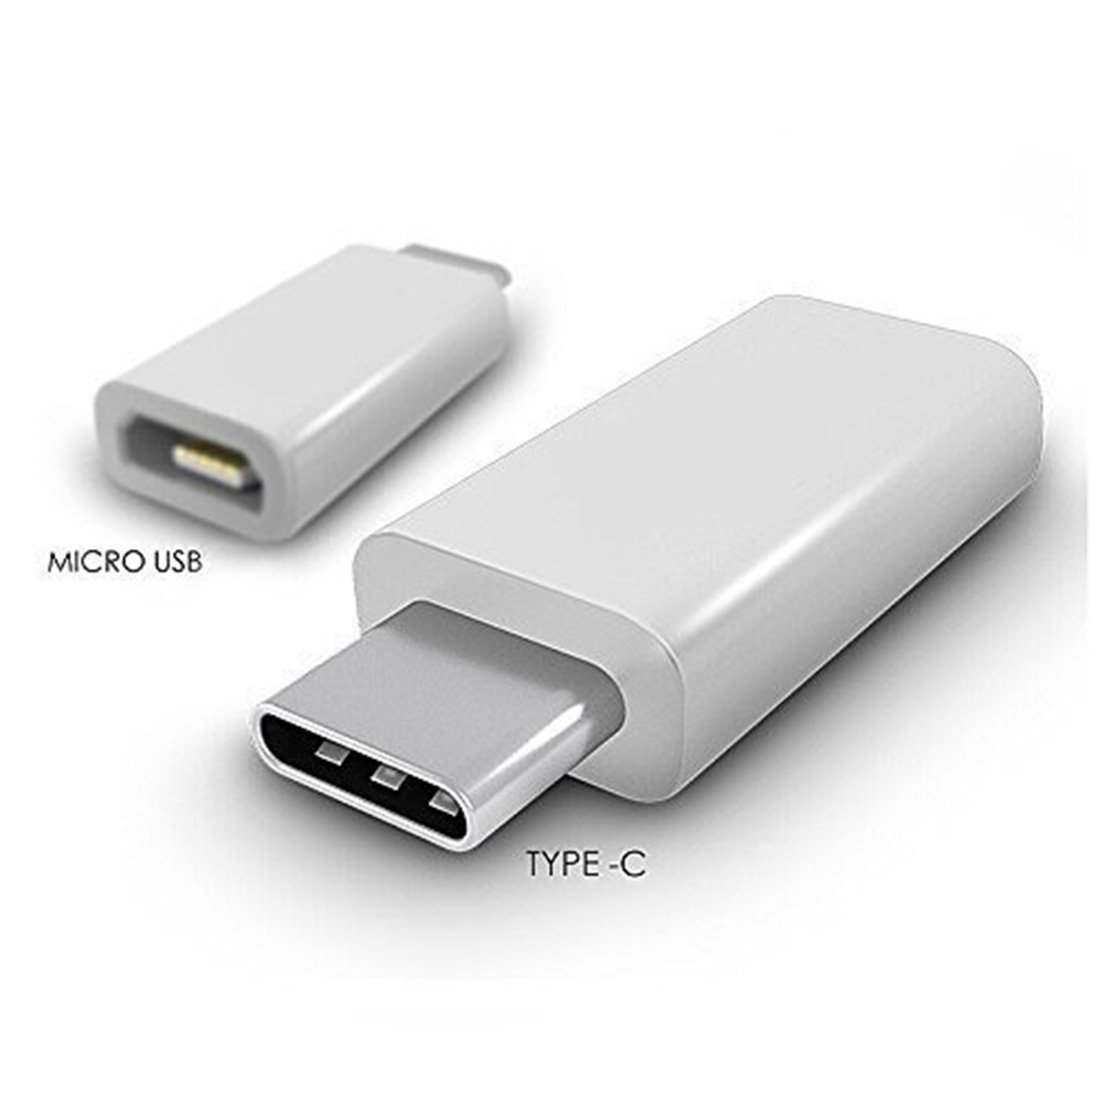 Тайпси аукс. Переходник USB 2.0 Type a male to Type c. USB C Micro USB. Переходник микро USB Type c OTG переходник. Микро юсб Type c.